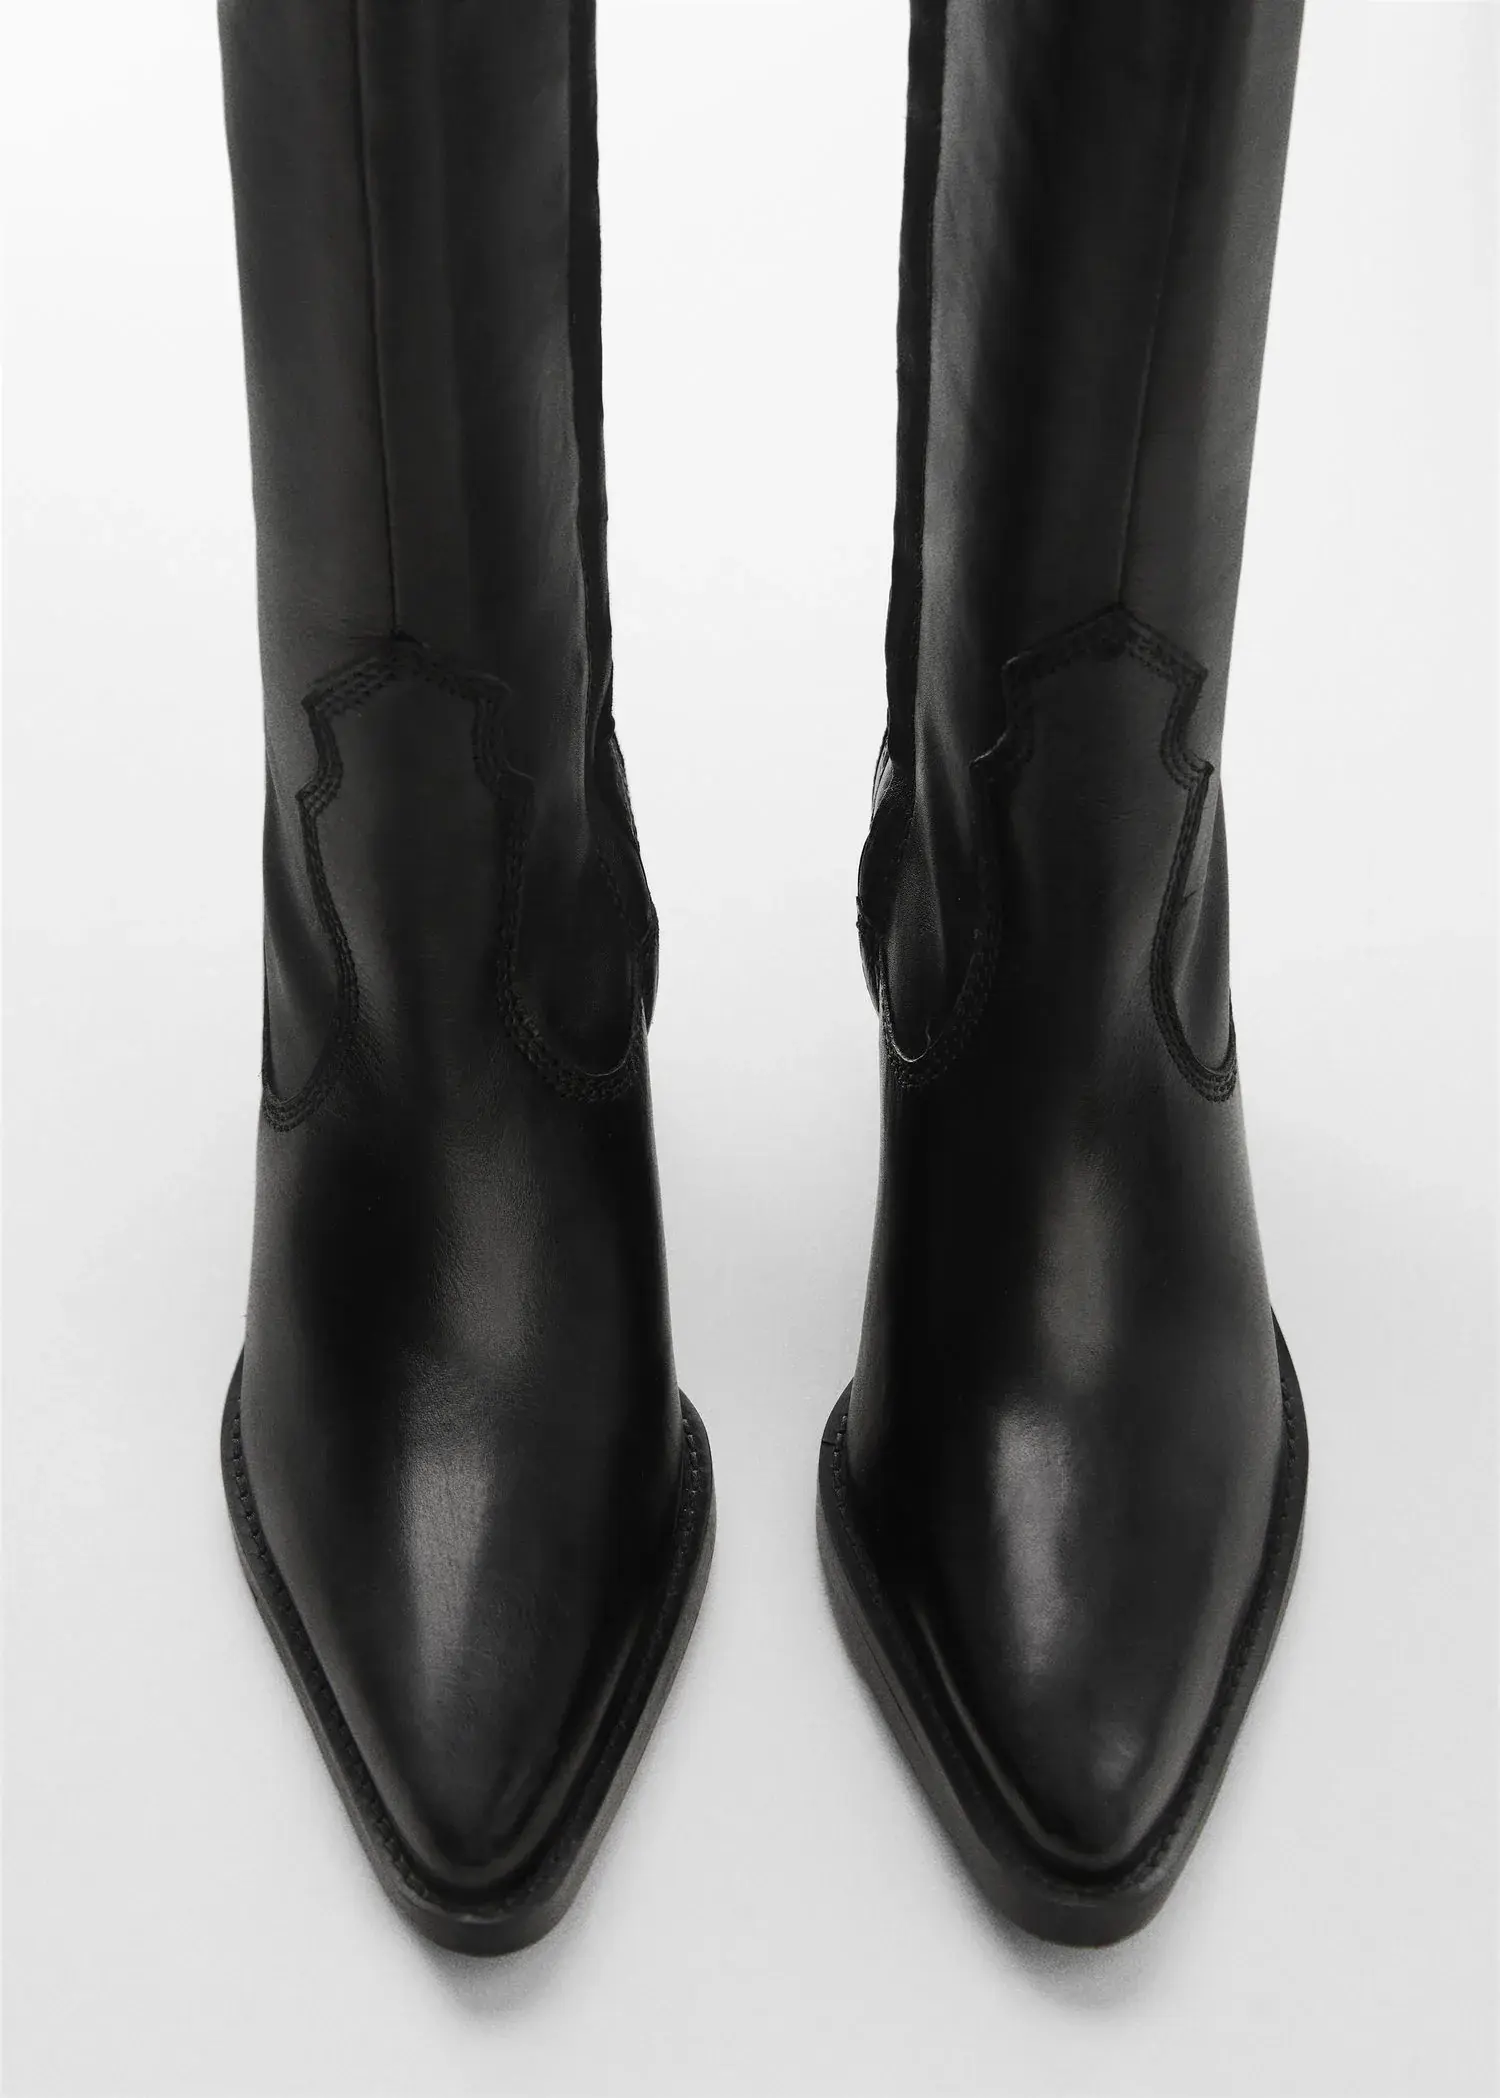 Mango High heel leather boot. 3